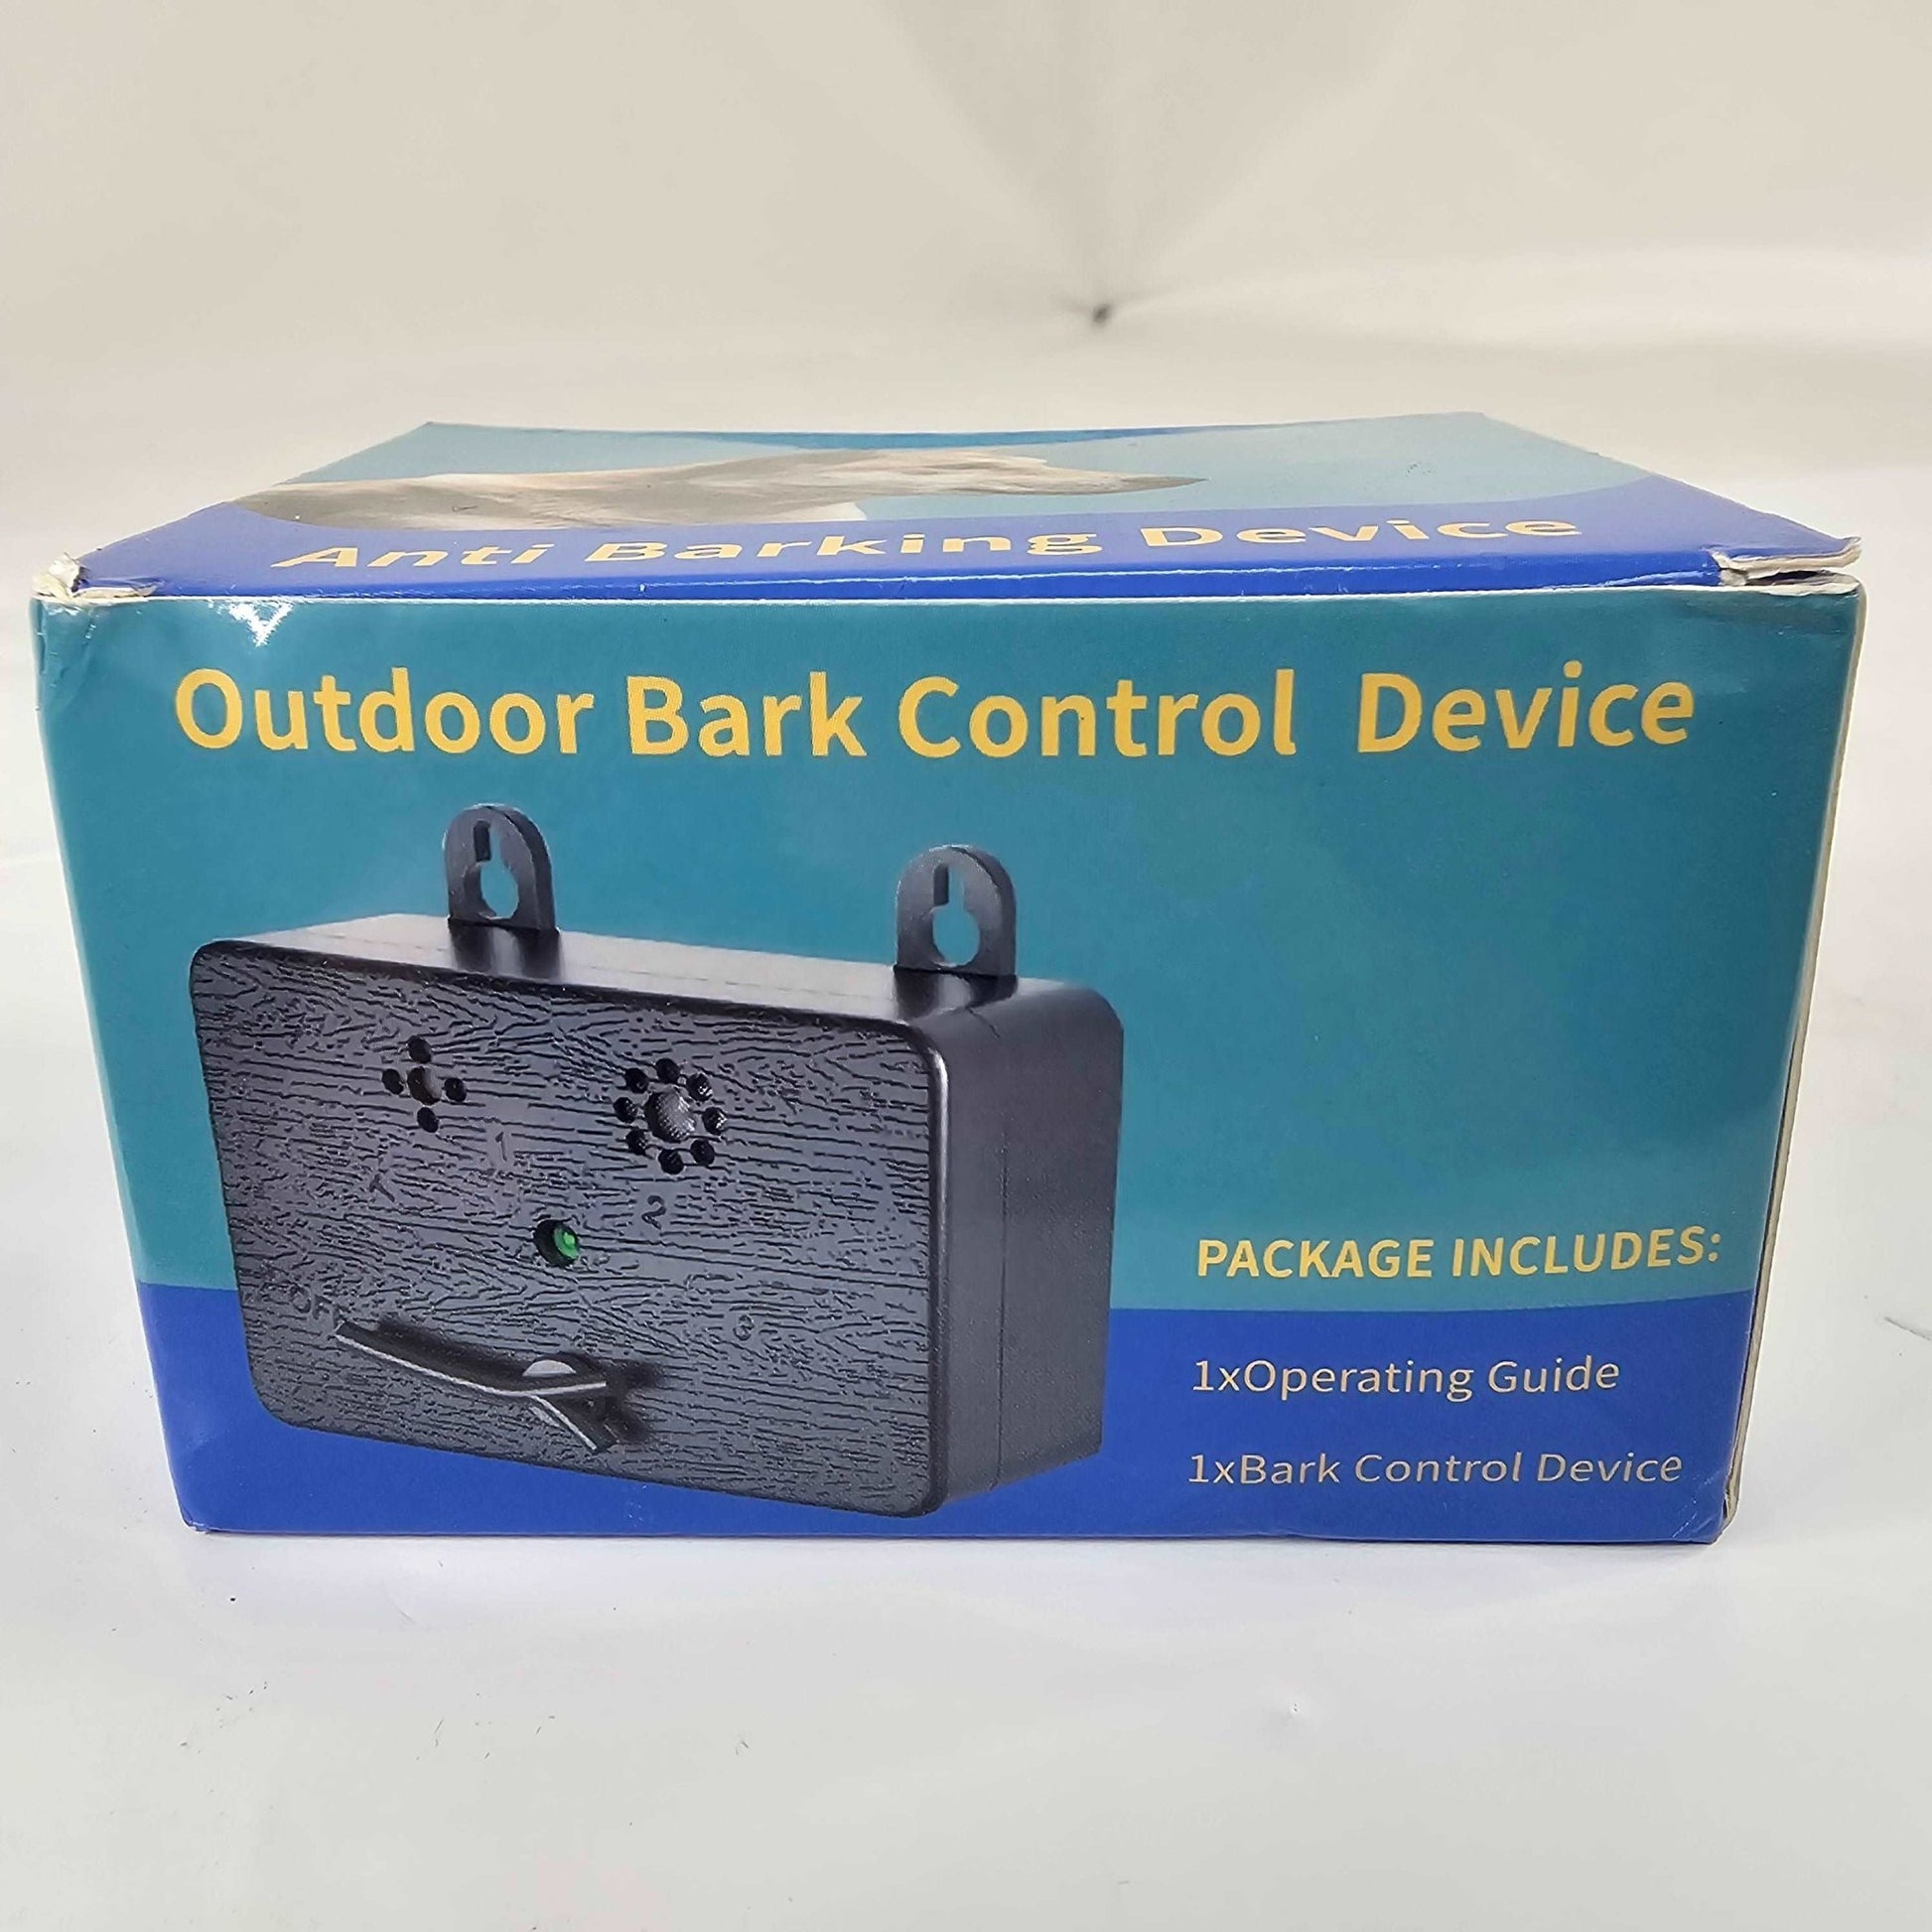 9V Anti Barking Device Flpthqq - DQ Distribution